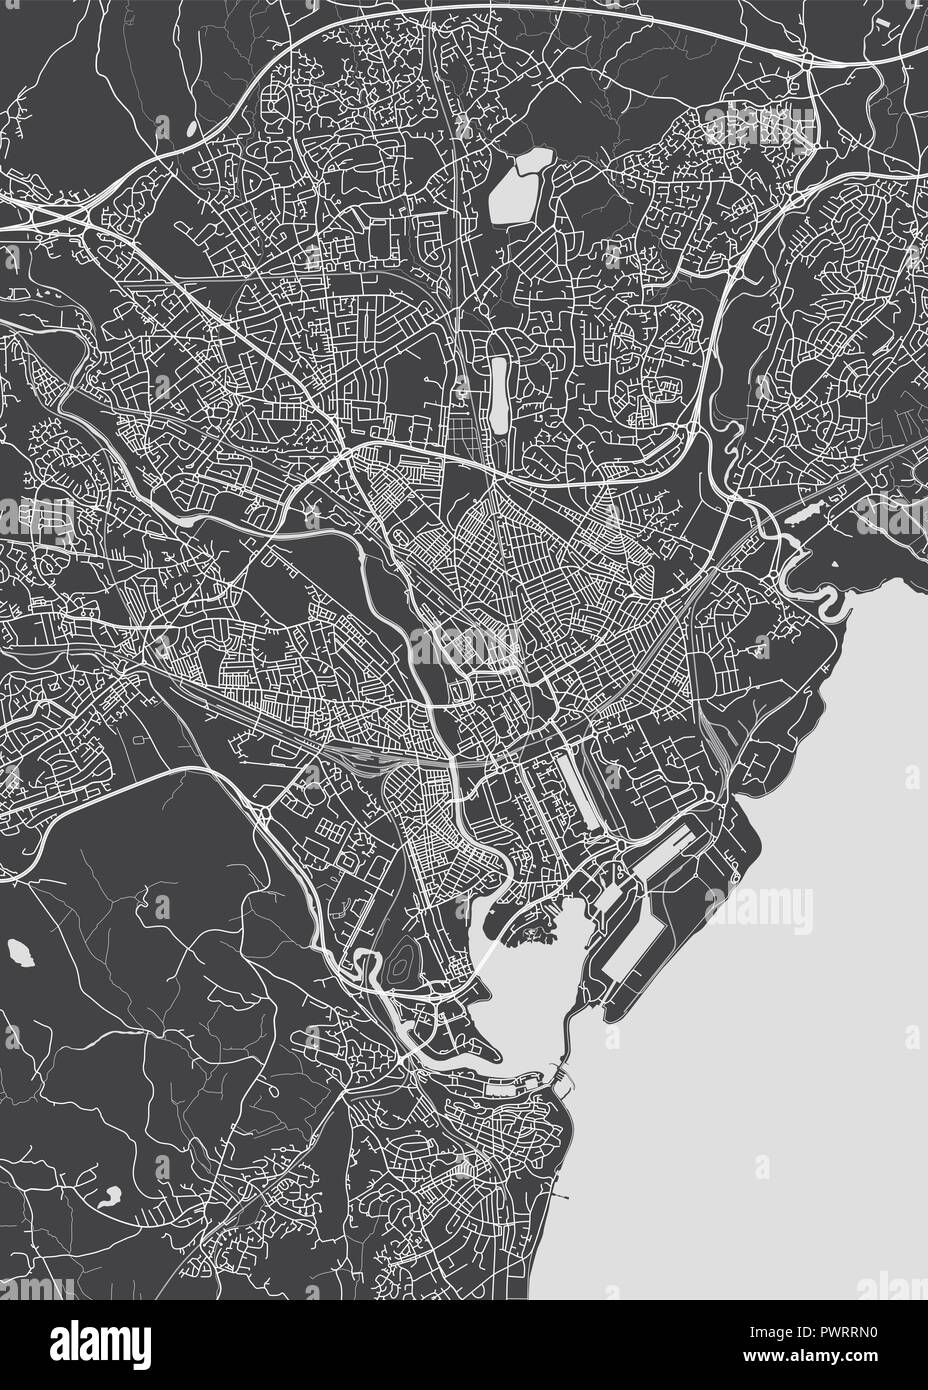 Plan détaillé monochrome ville de Cardiff plan détaillé de la ville, les rivières et les rues Illustration de Vecteur